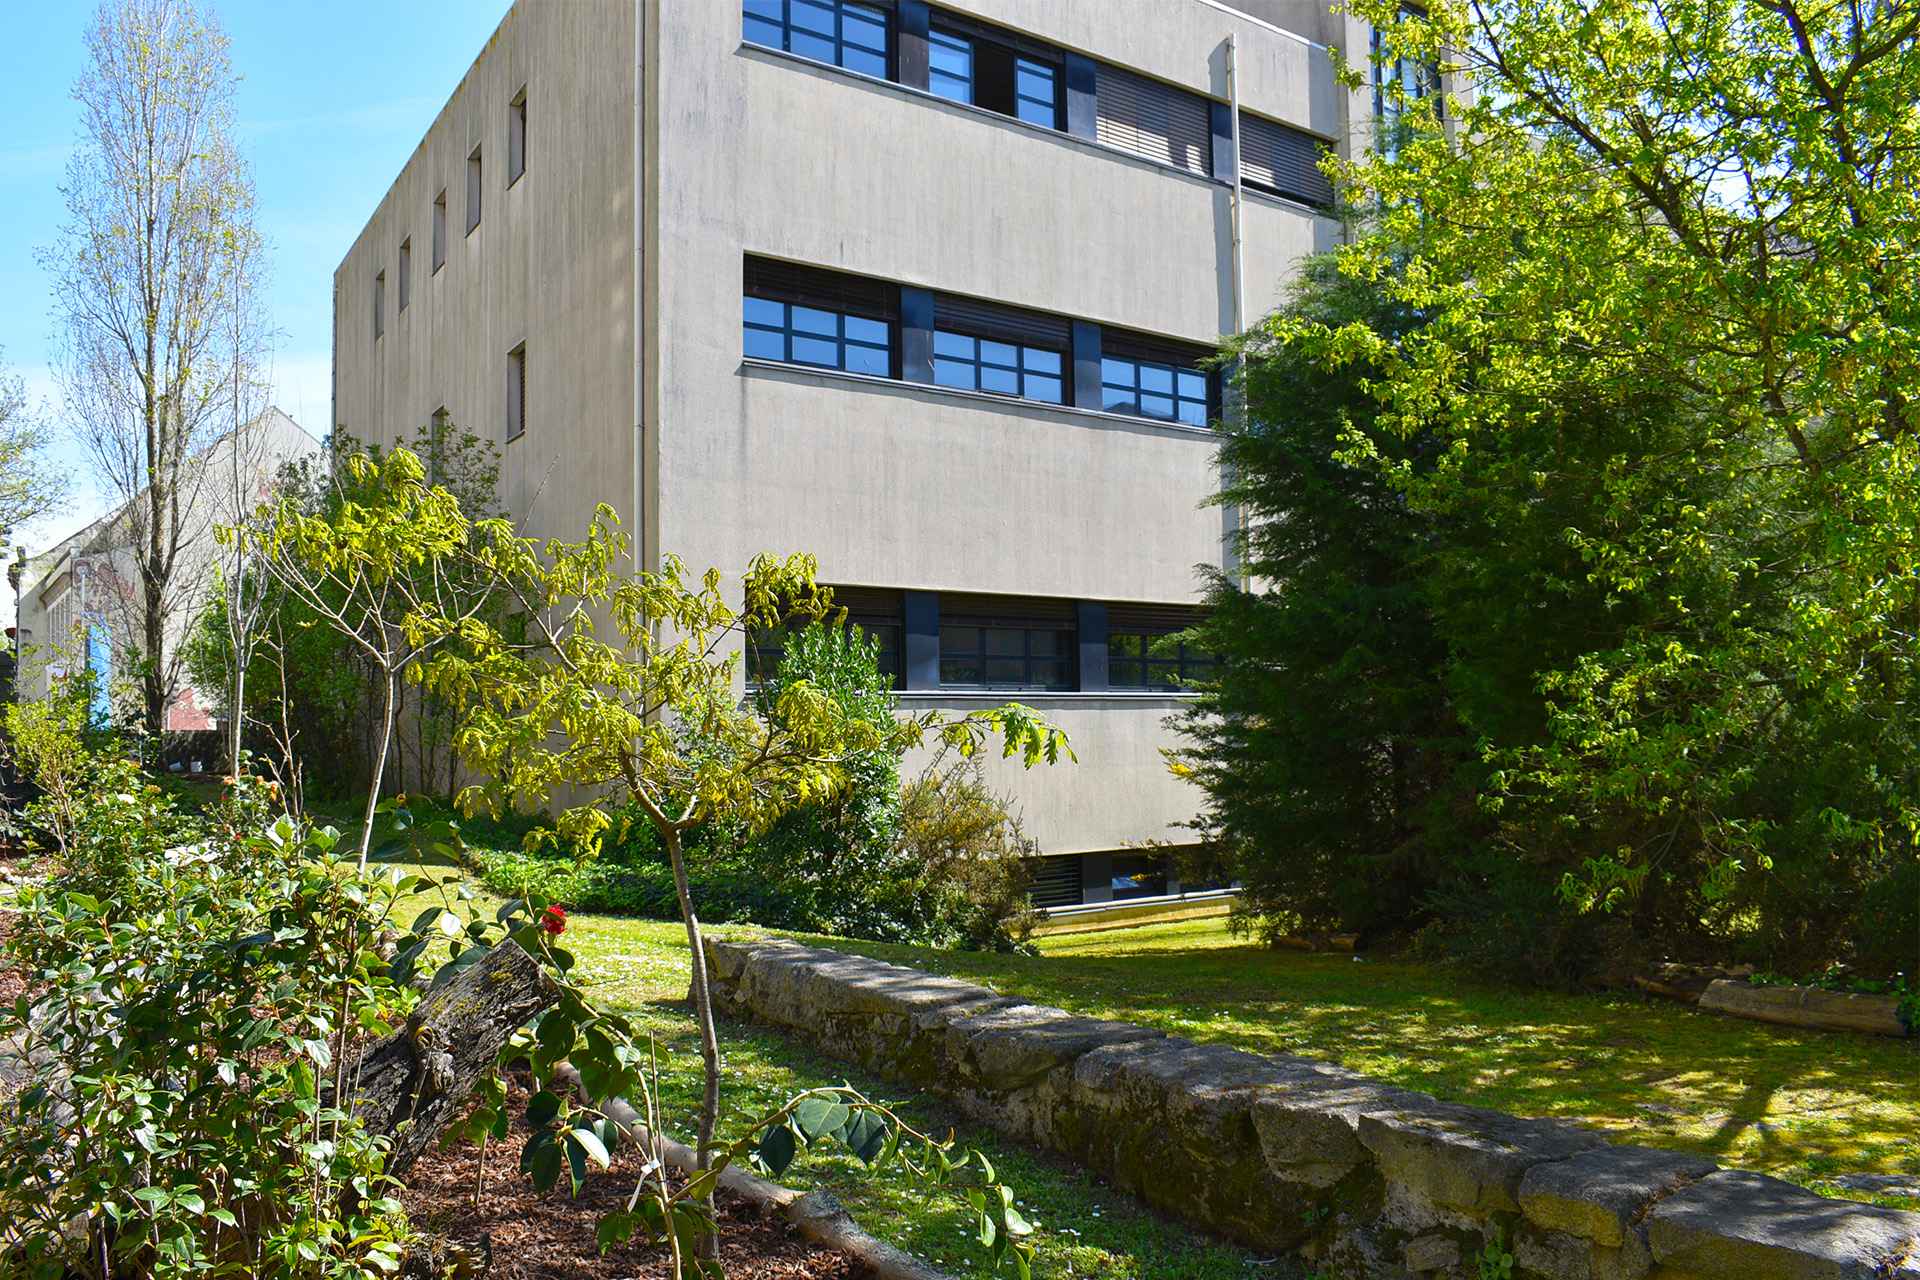 Edifício da Faculdade de Ciências da Universidade do Porto